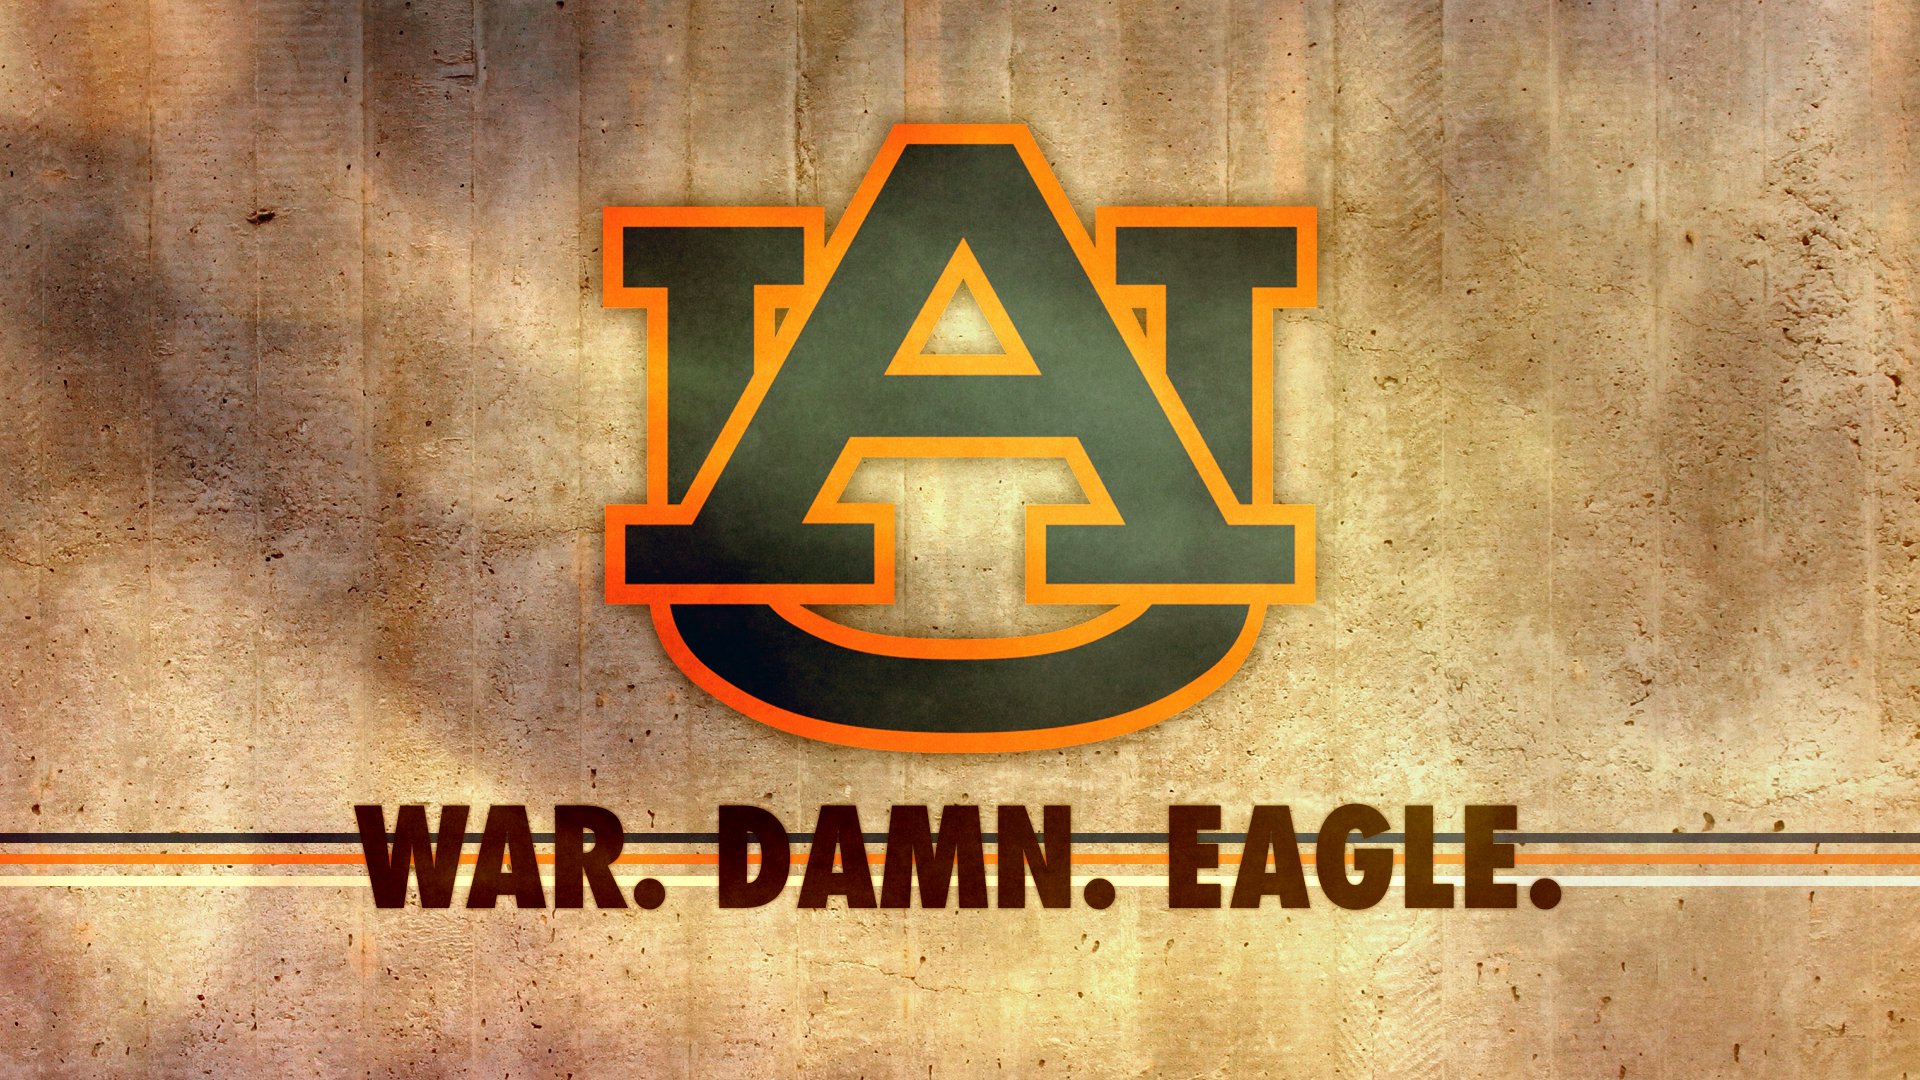 Auburn Tigers Football Wallpaper Hd Pixelstalk